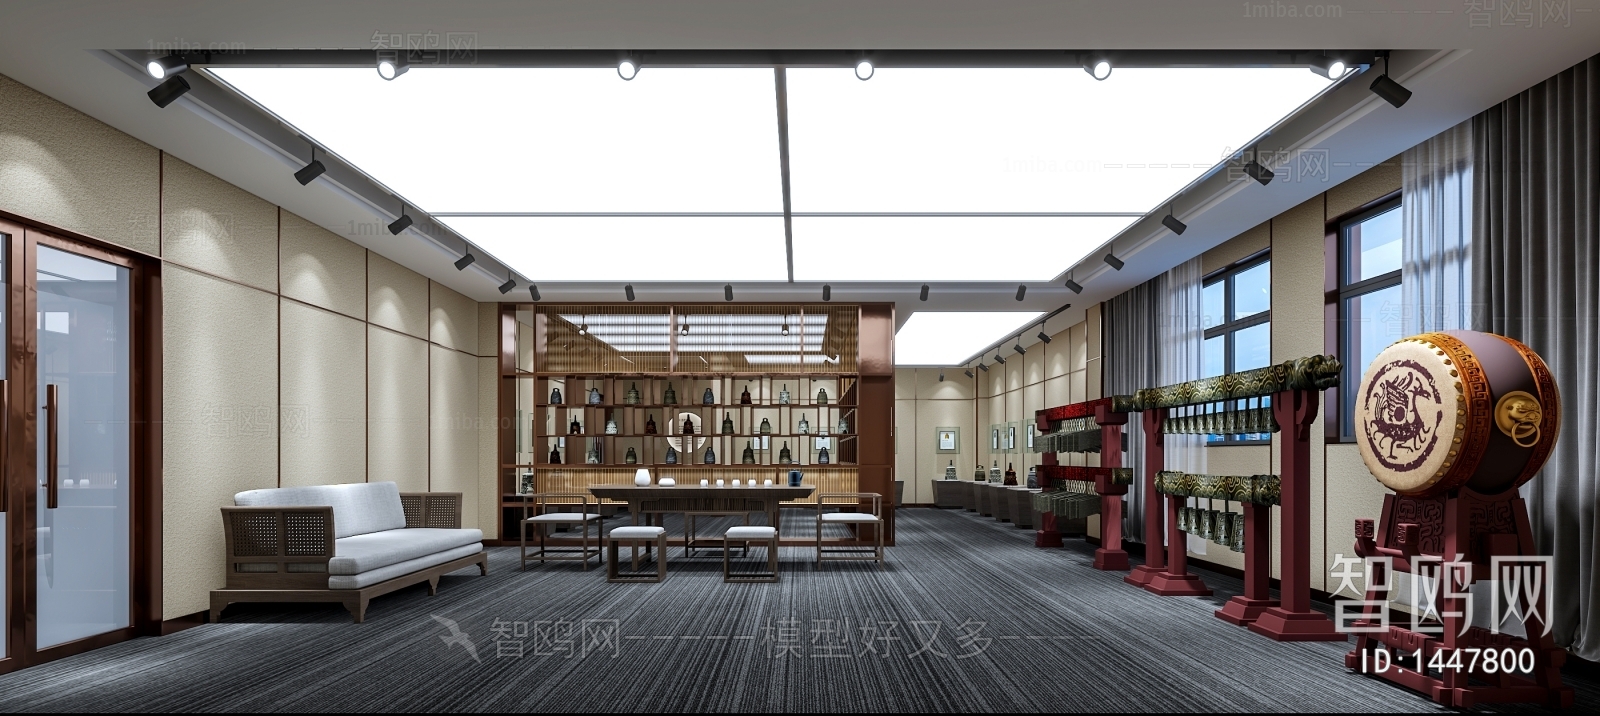 新中式工艺品展厅